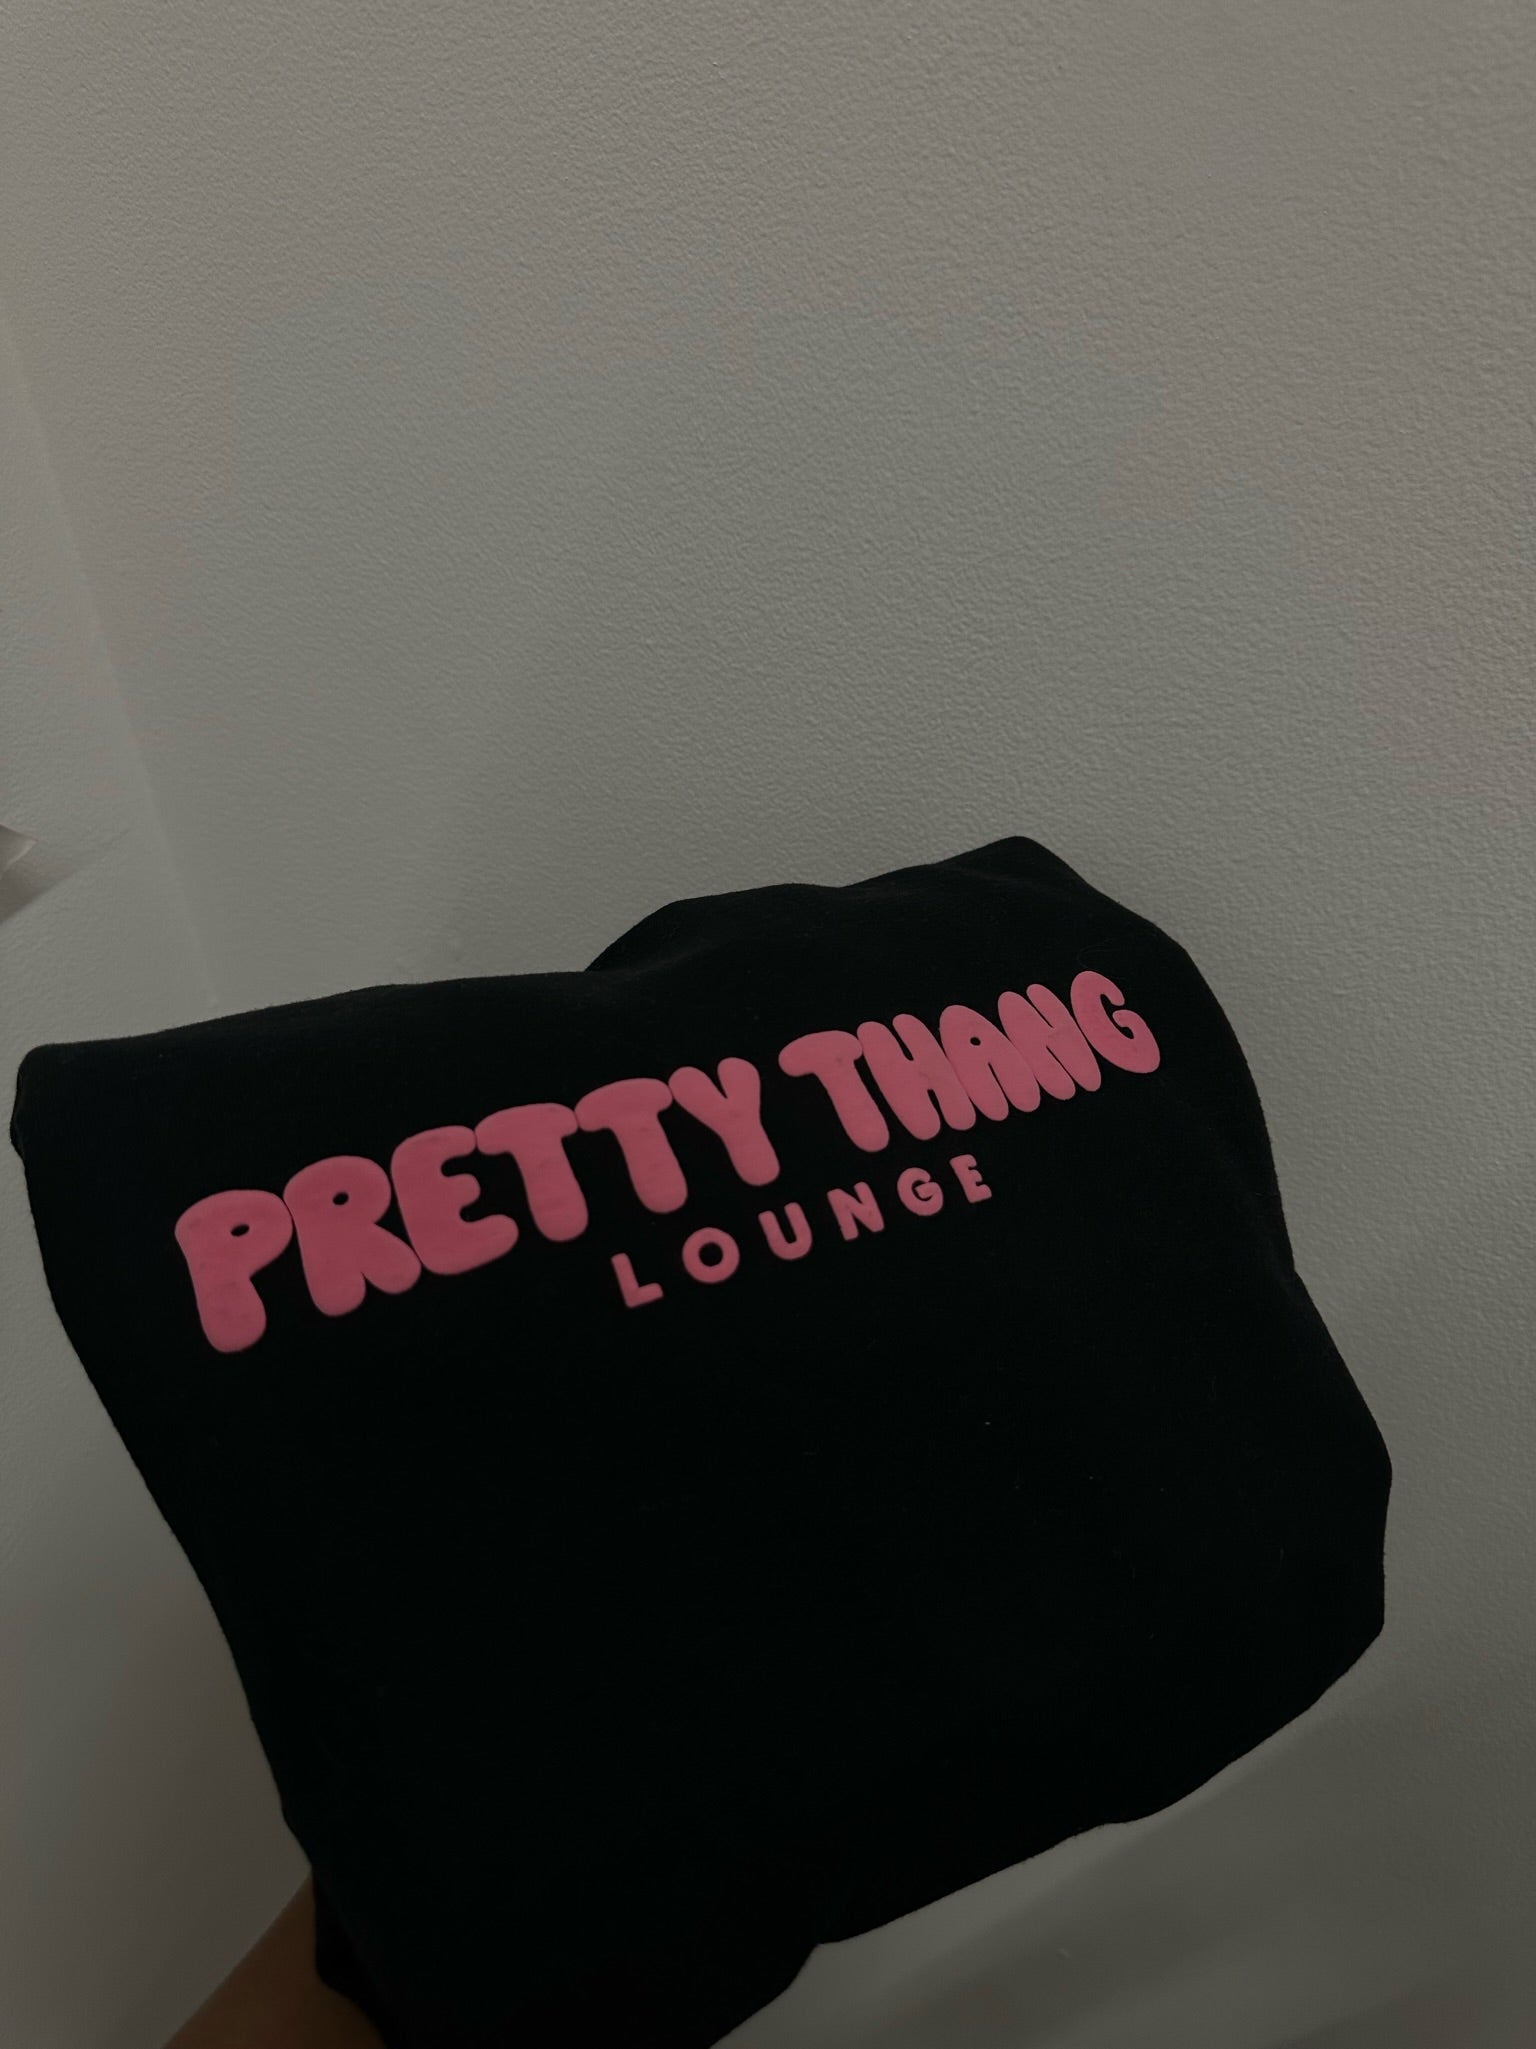 Boo Thang- Chain Panty – PrettyThangLounge